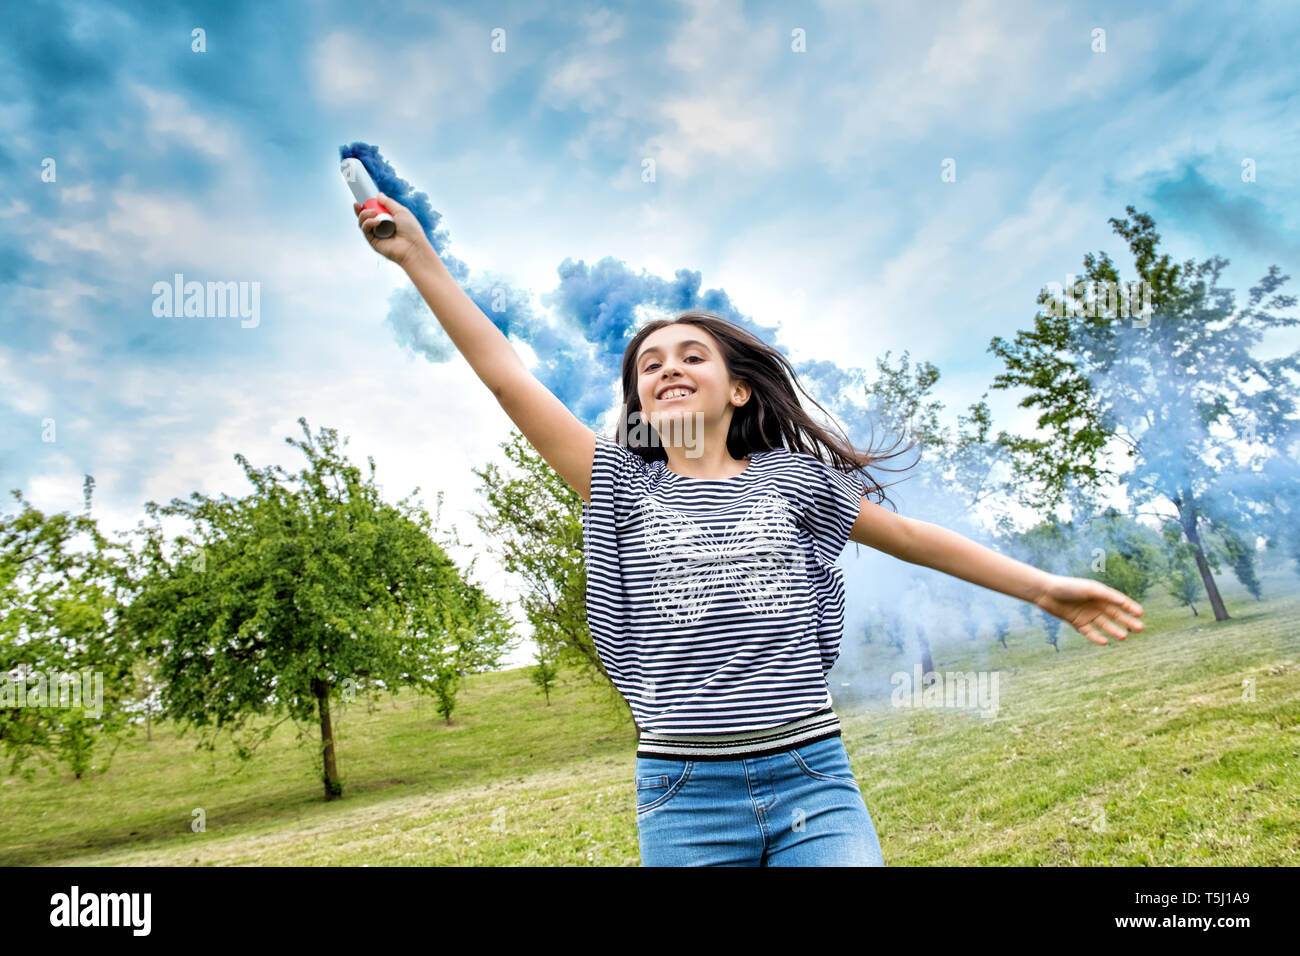 Felice di ridere ragazza giovane trailing una svasatura di fumo in una nuvola di coloratissimi fumo blu come lei corre verso la telecamera tenendola aloft in un parco a molla Foto Stock